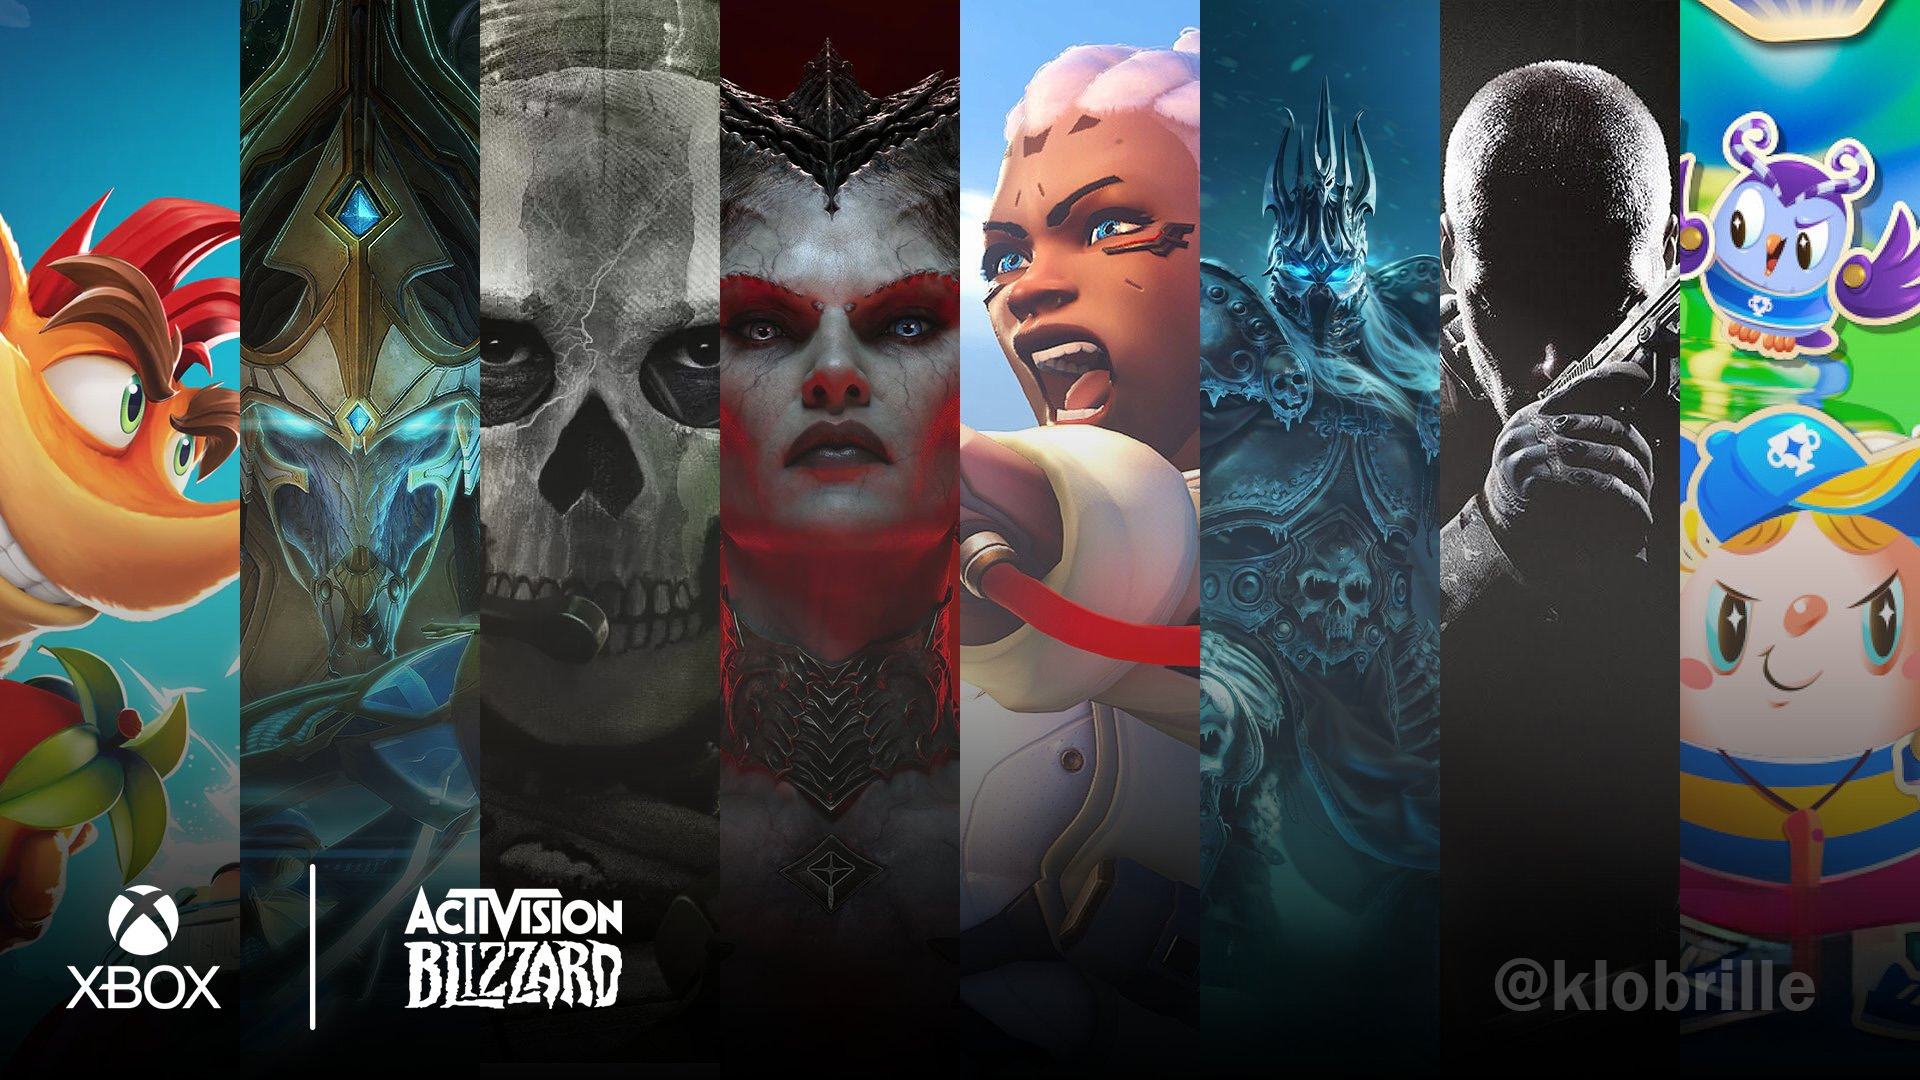 Activision Blizzard karakter kahramanları